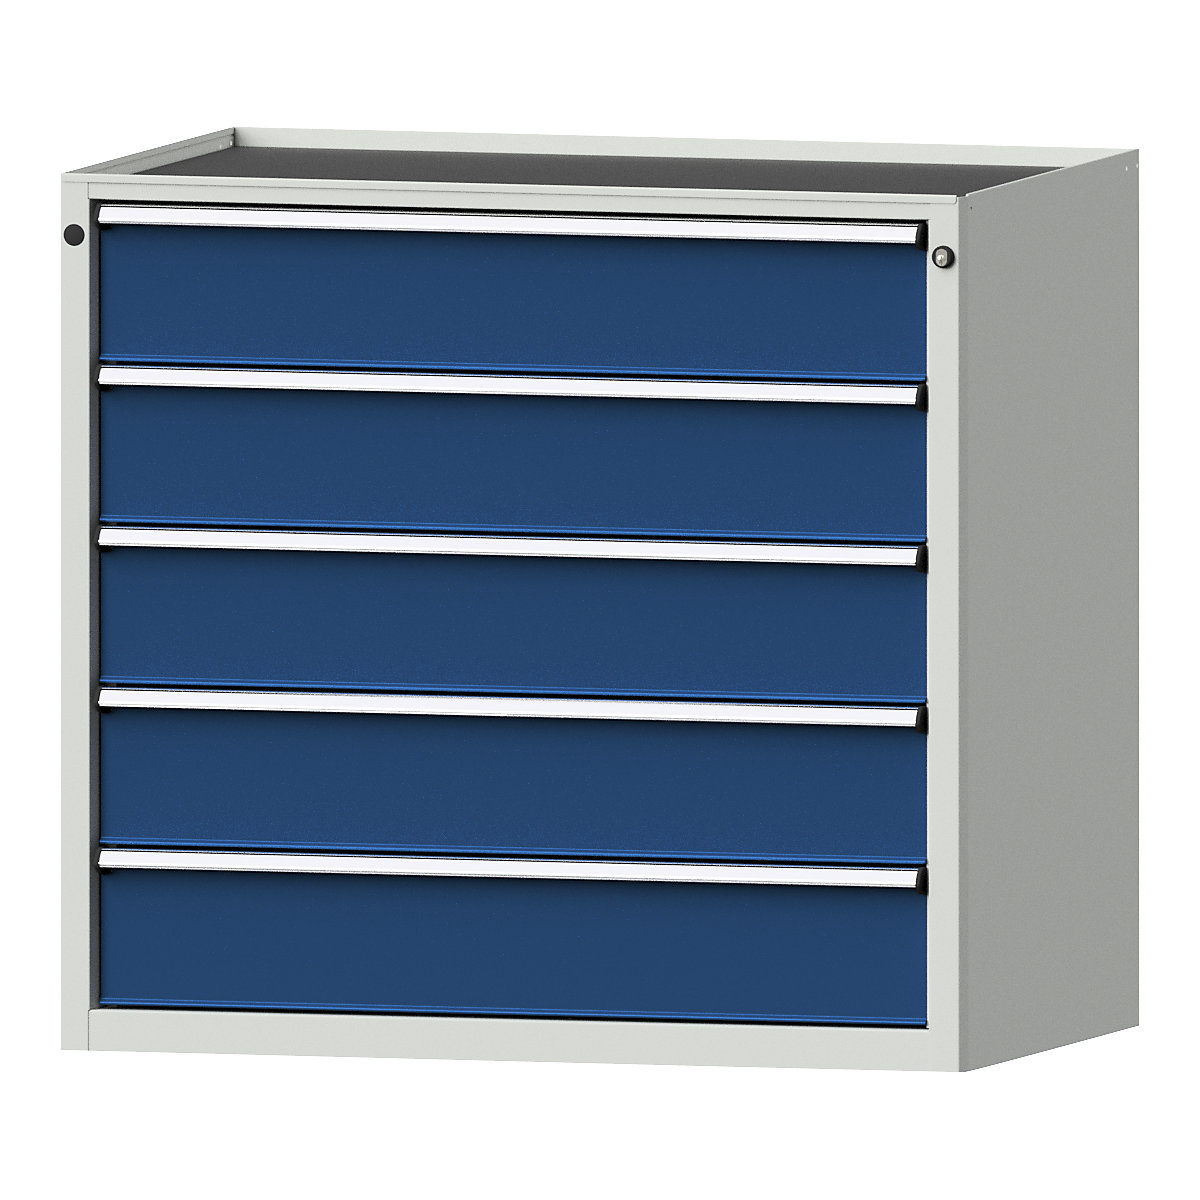 Armoire à tiroirs – ANKE, l x p 1060 x 675 mm, charge max. tiroirs 200 kg, 5 tiroirs, hauteur 980 mm, façade bleu gentiane-10